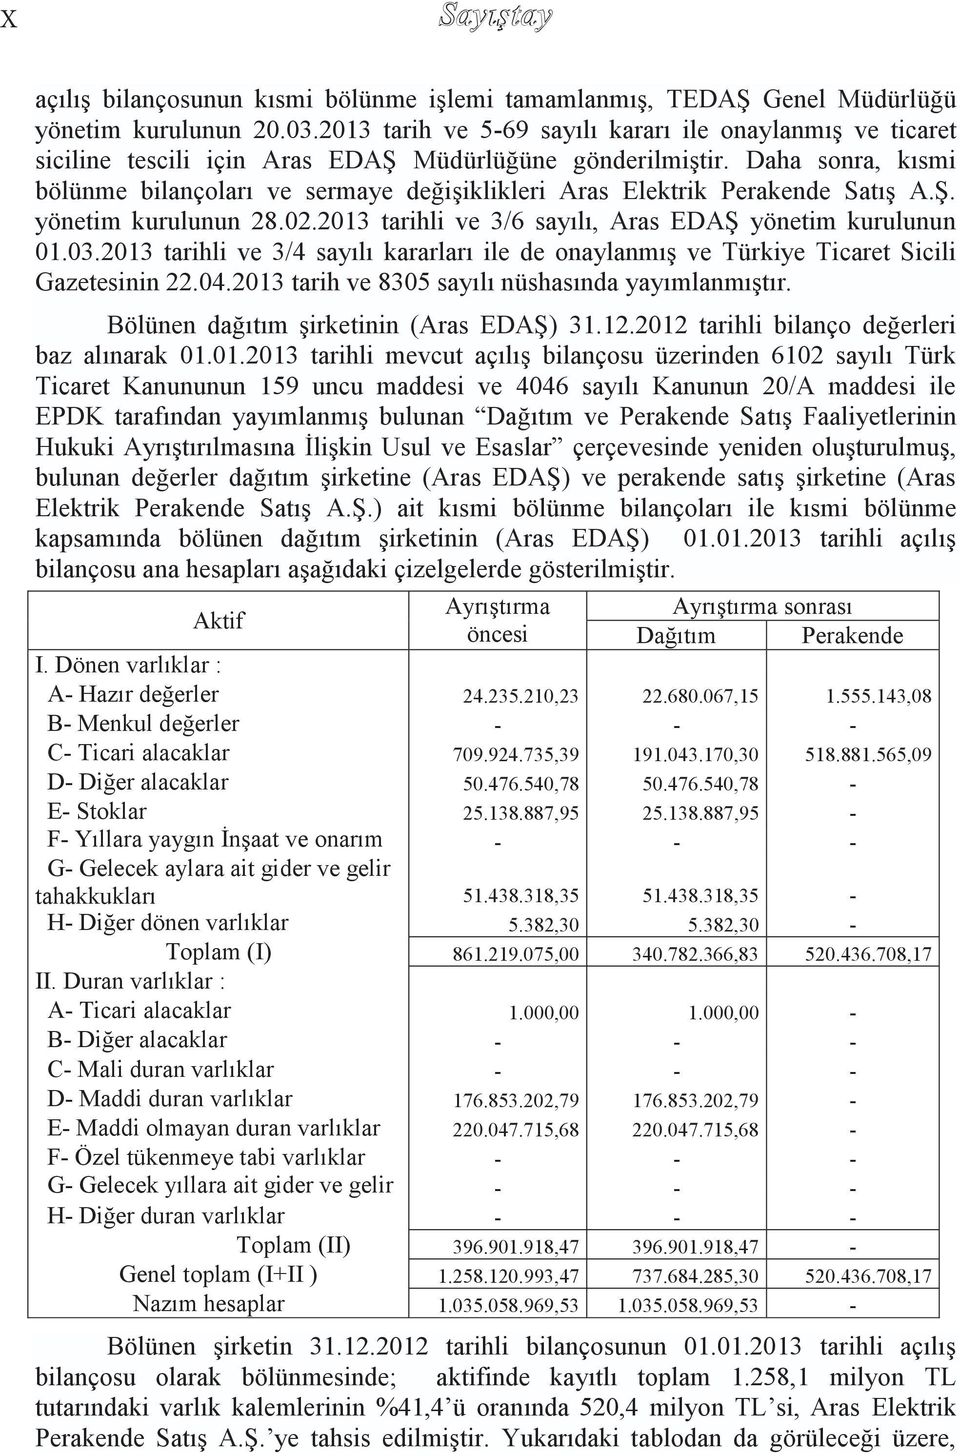 Daha sonra, kısmi bölünme bilançoları ve sermaye değiģiklikleri Aras Elektrik Perakende SatıĢ A.ġ. yönetim kurulunun 28.02.2013 tarihli ve 3/6 sayılı, Aras EDAġ yönetim kurulunun 01.03.